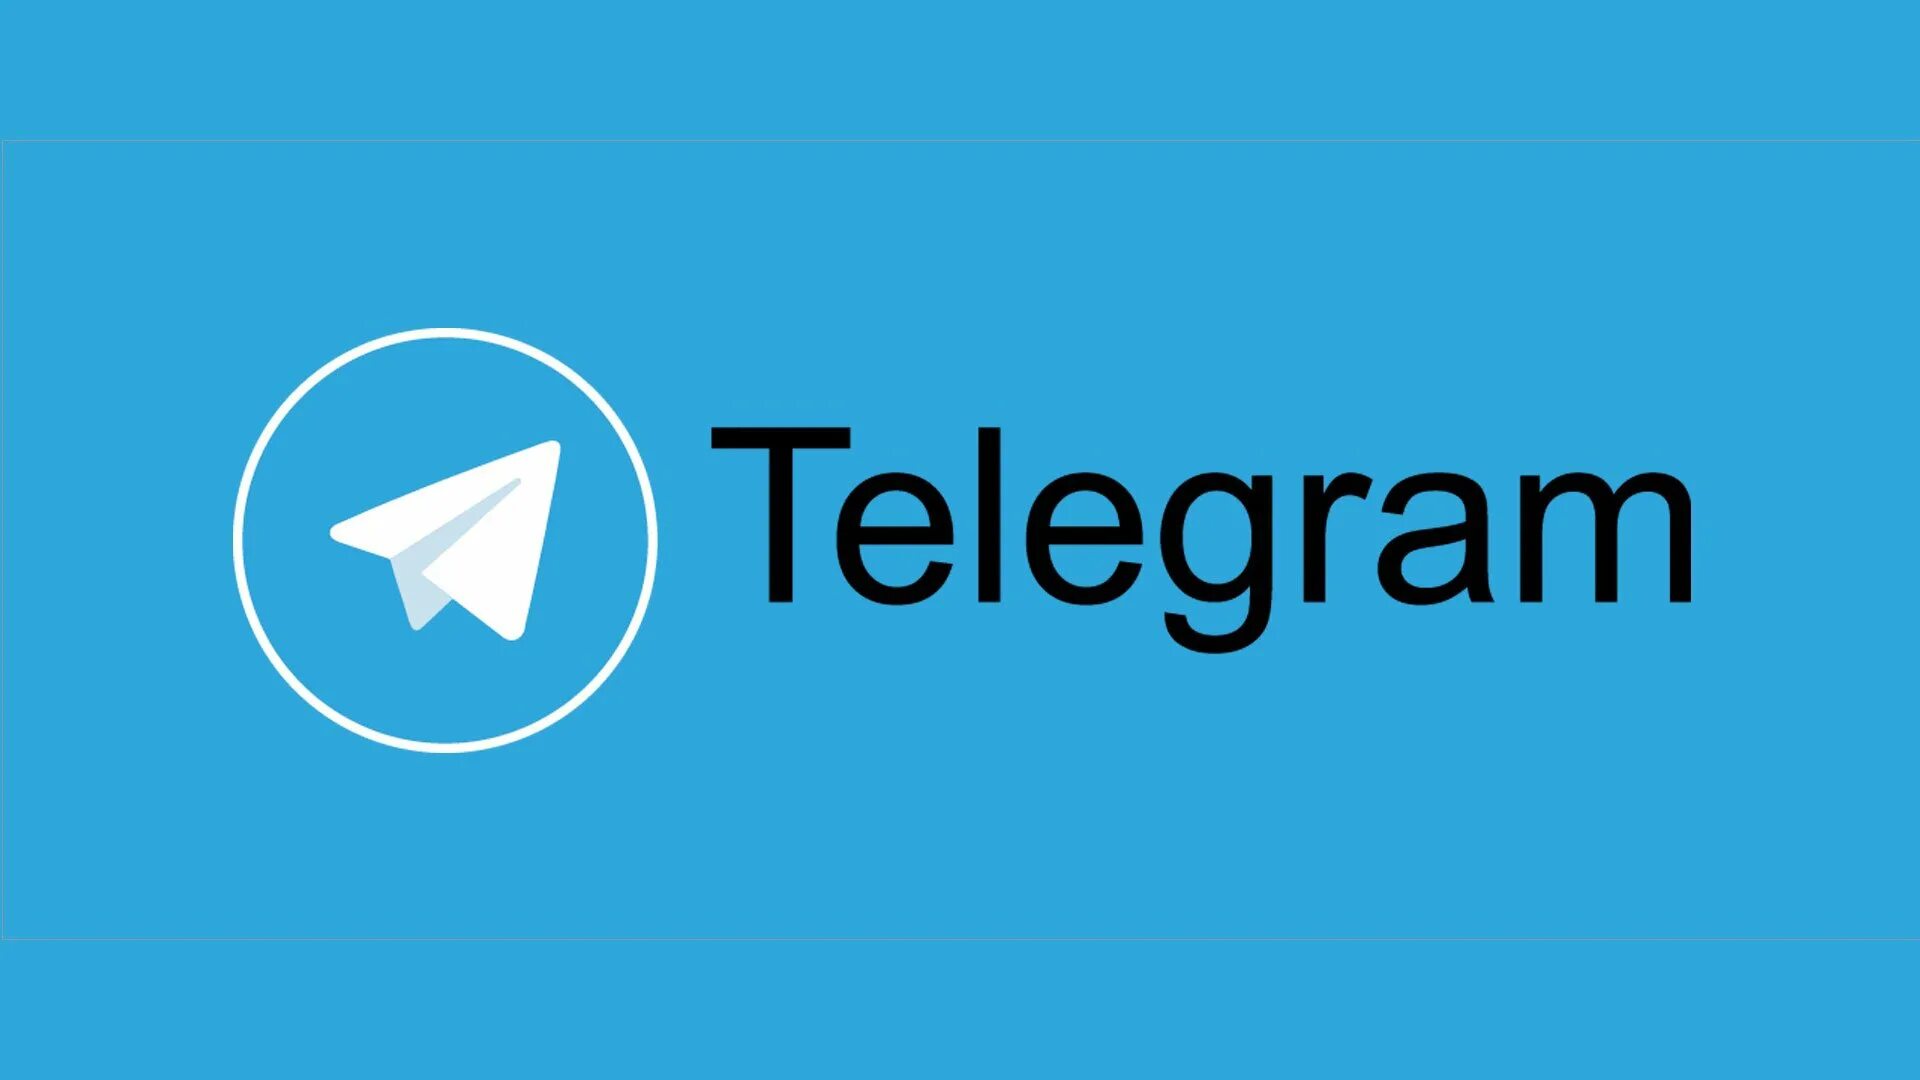 Telegram auth. Телеграмм. Логотип телеграмма. Мессенджер телеграмм. Телеграм канал логотип.